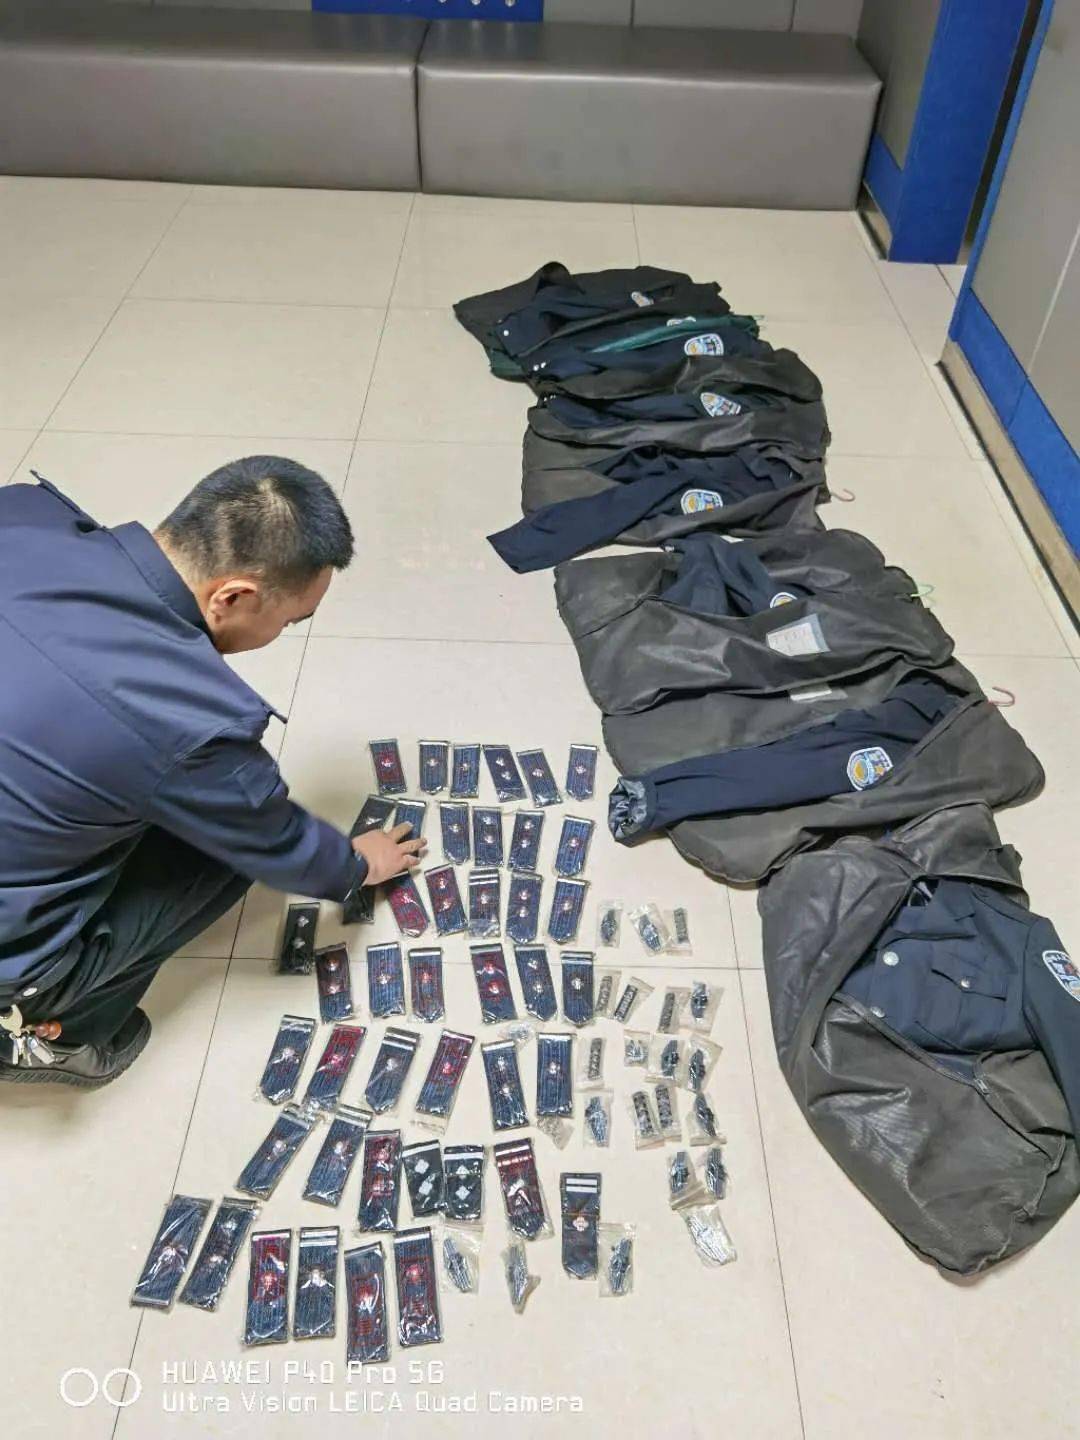 吕梁:服装店内售警服被警方查获